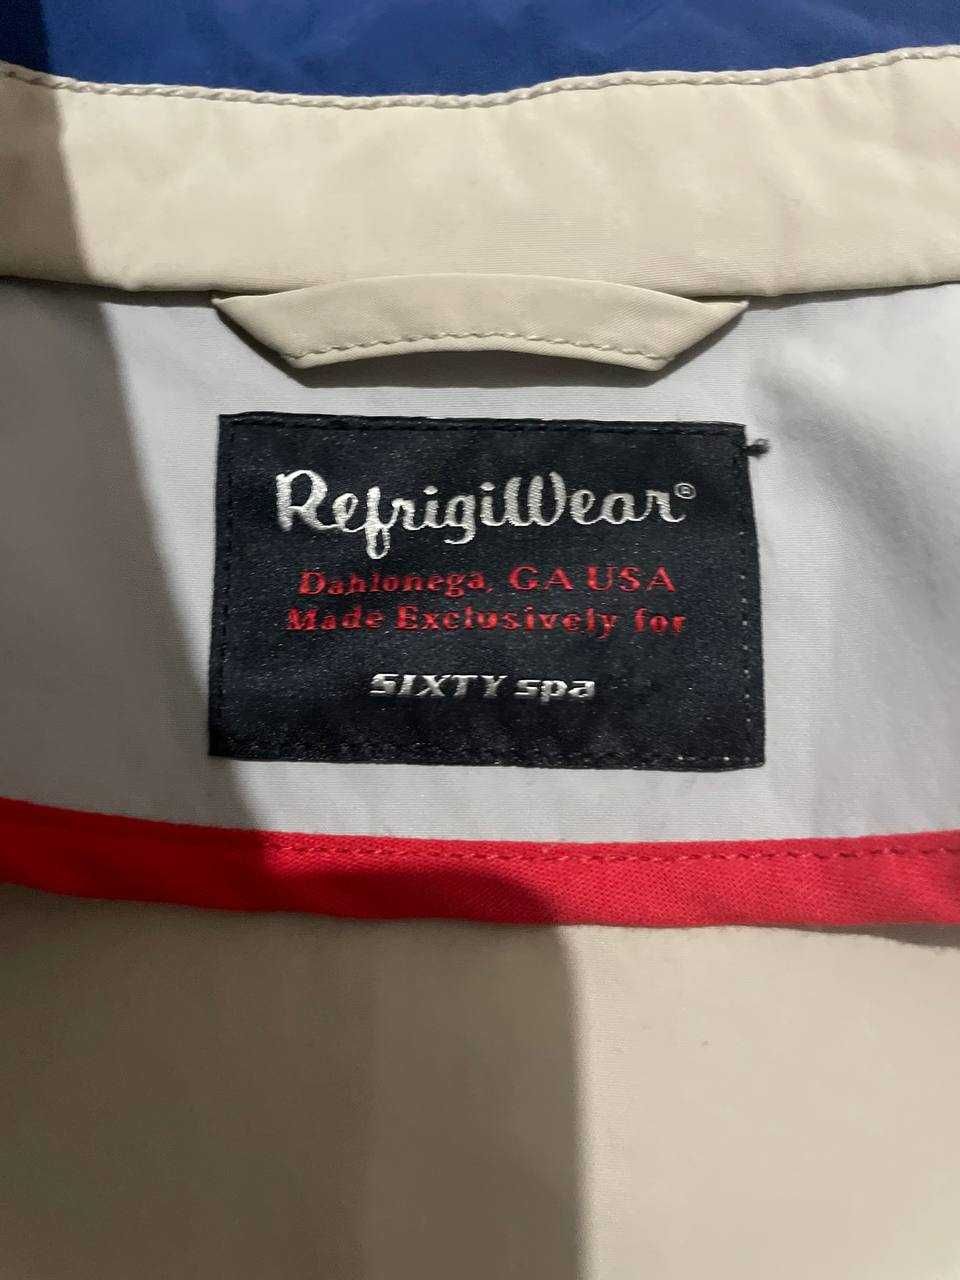 Refrigwear! Ветровка–куртка италянского производство.